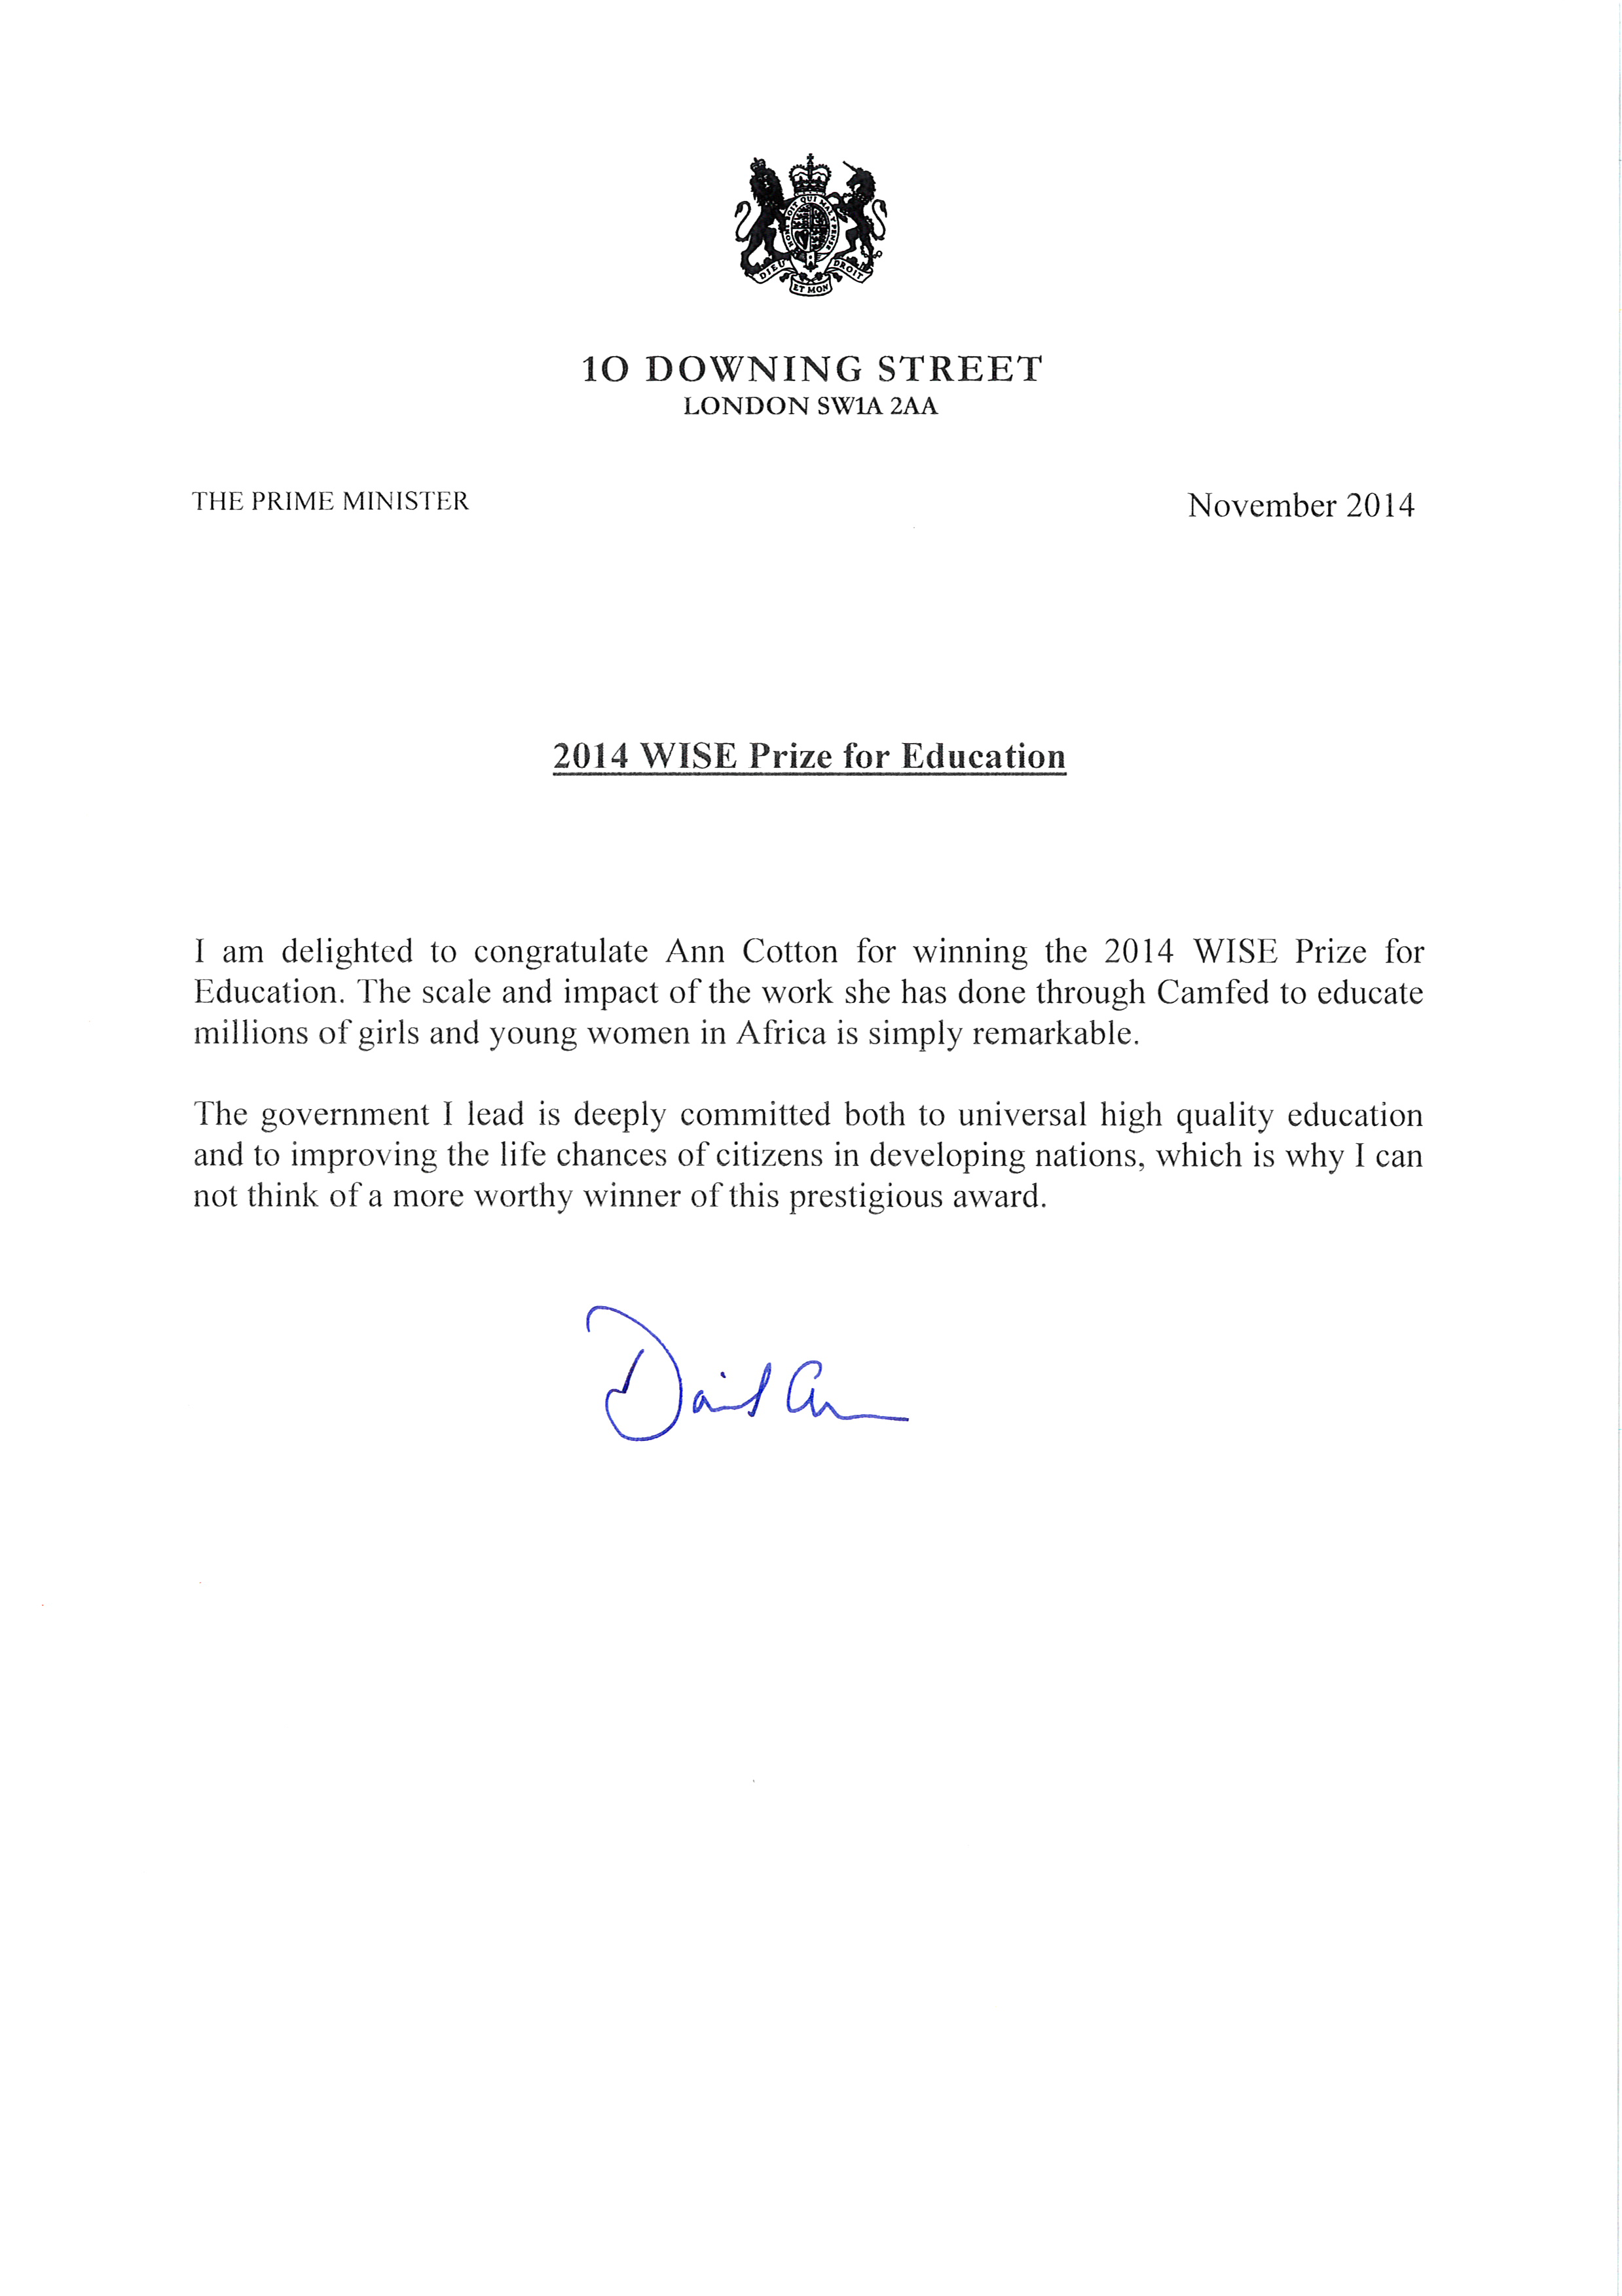 Prime Minister Cameron Congratulates Ann Cotton